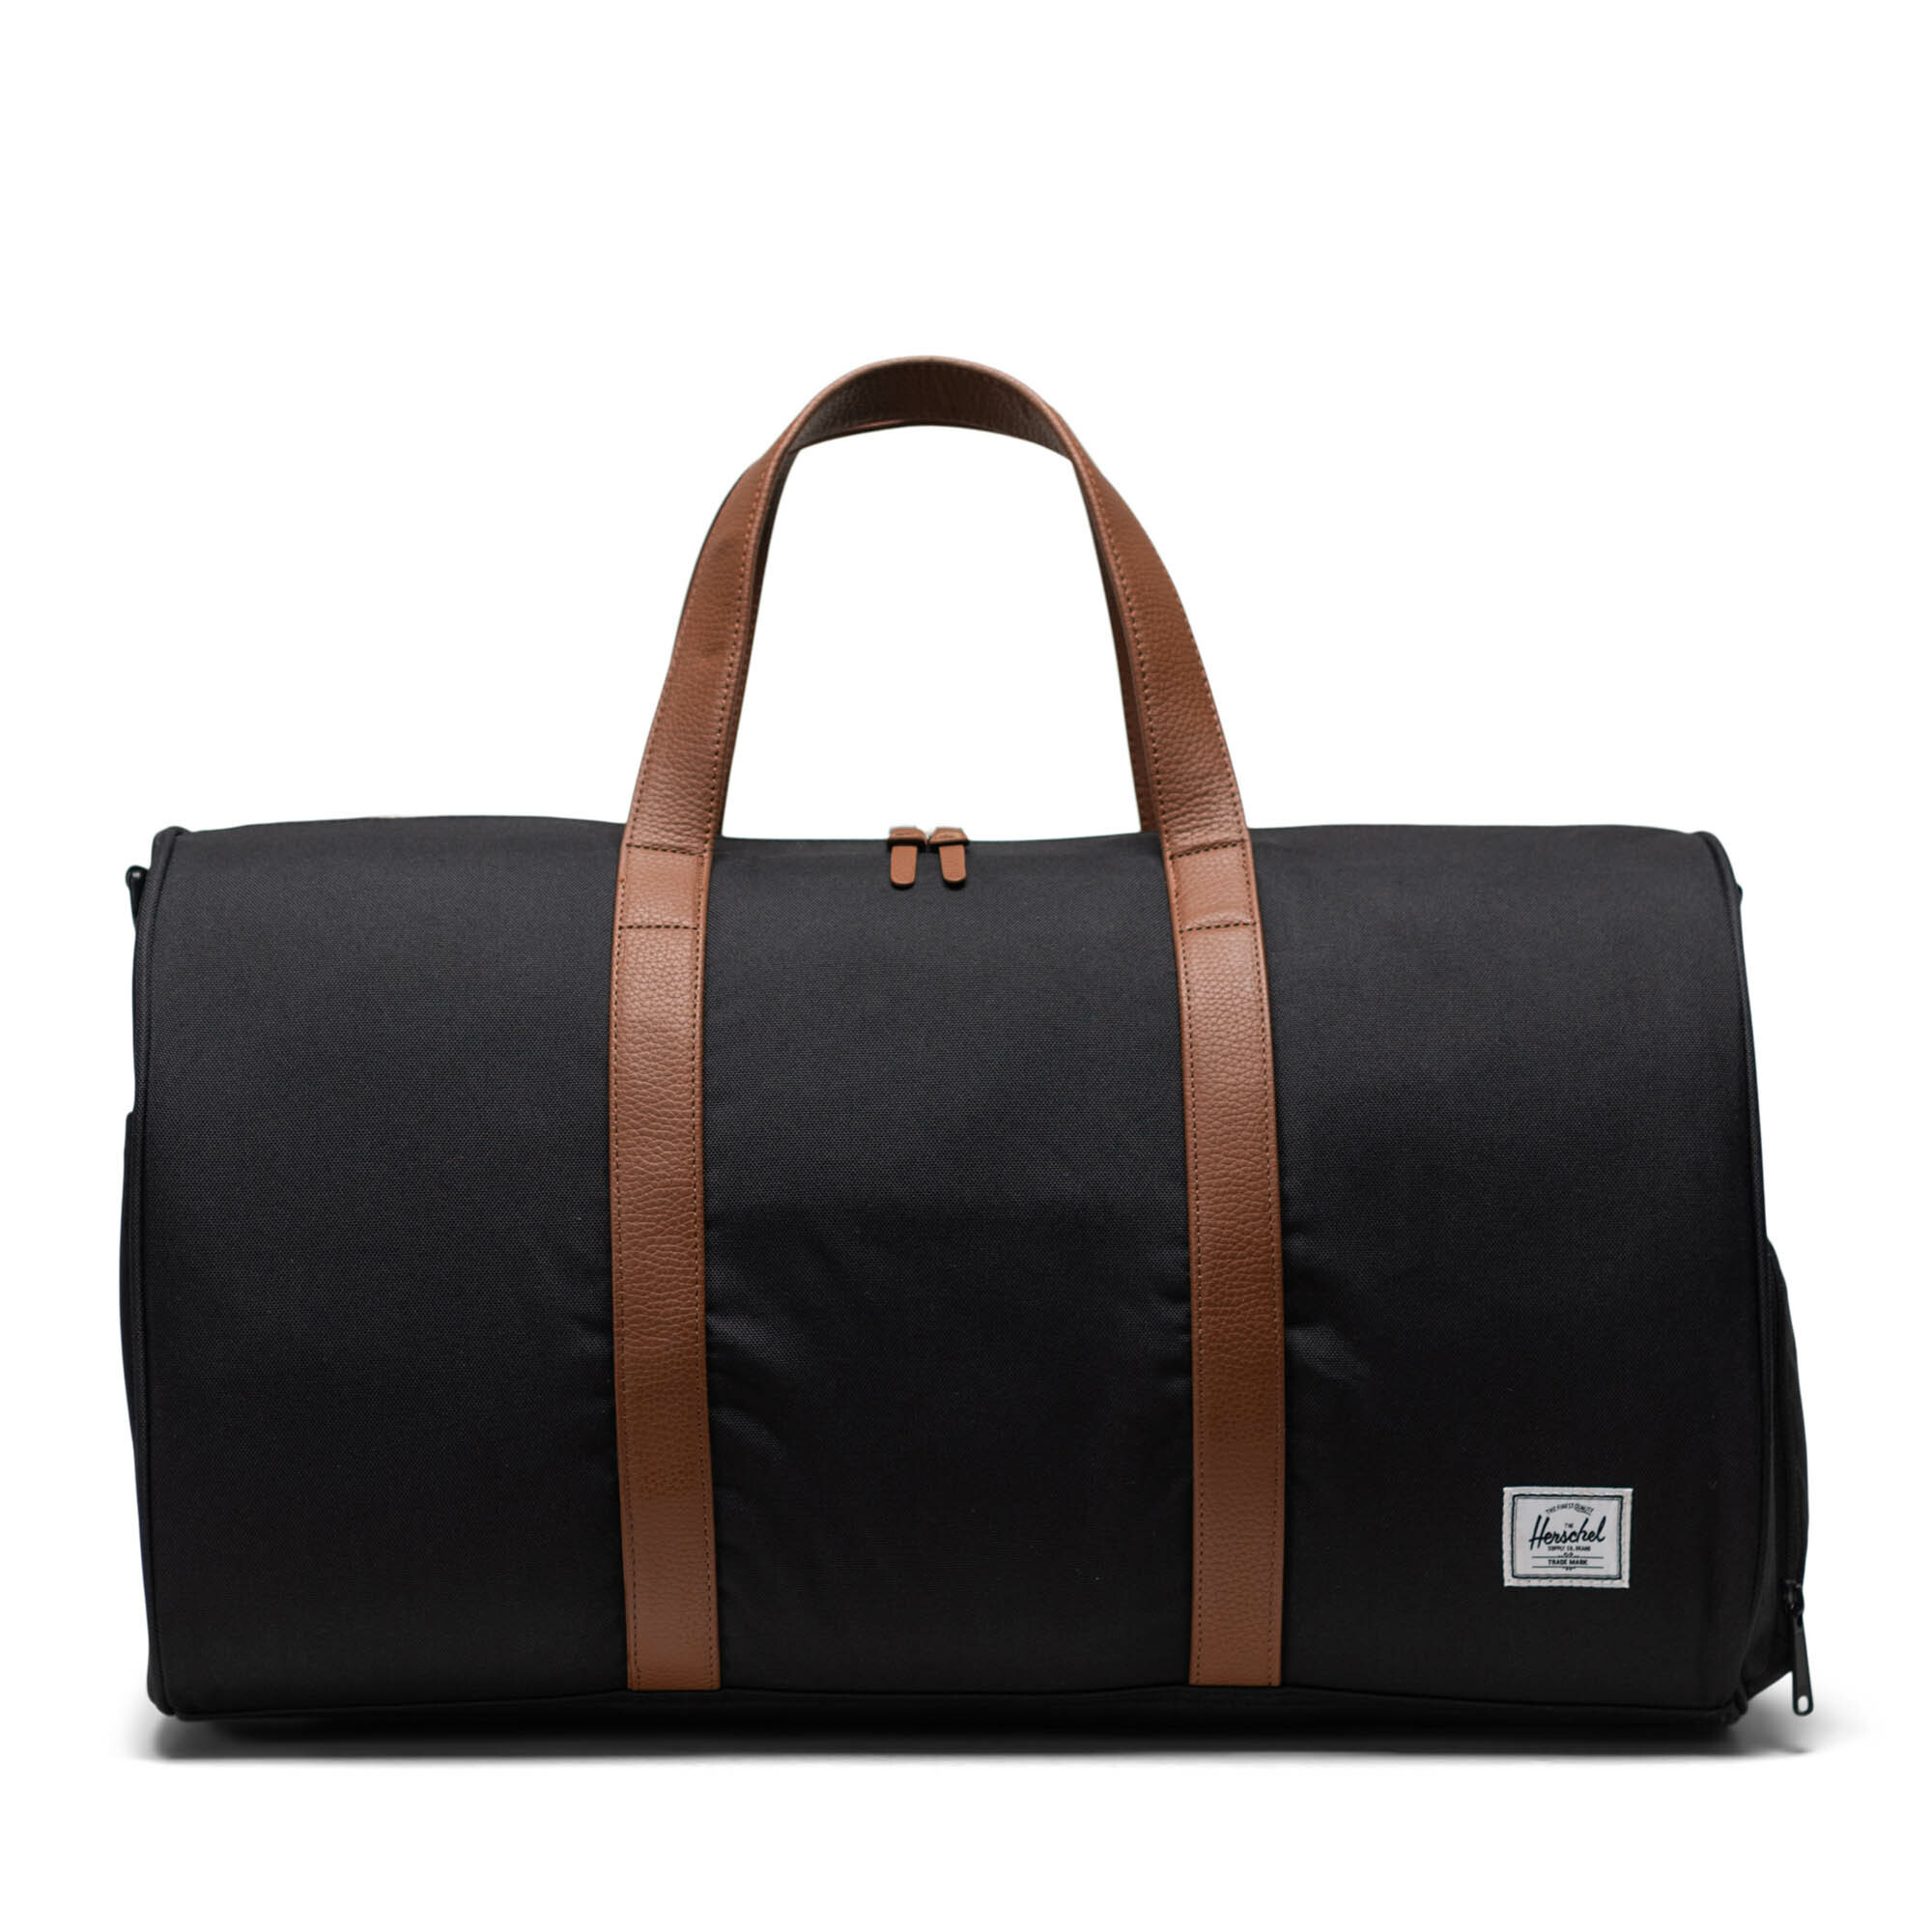 【Herschel】Novel 行李袋 經典黑 42.5L